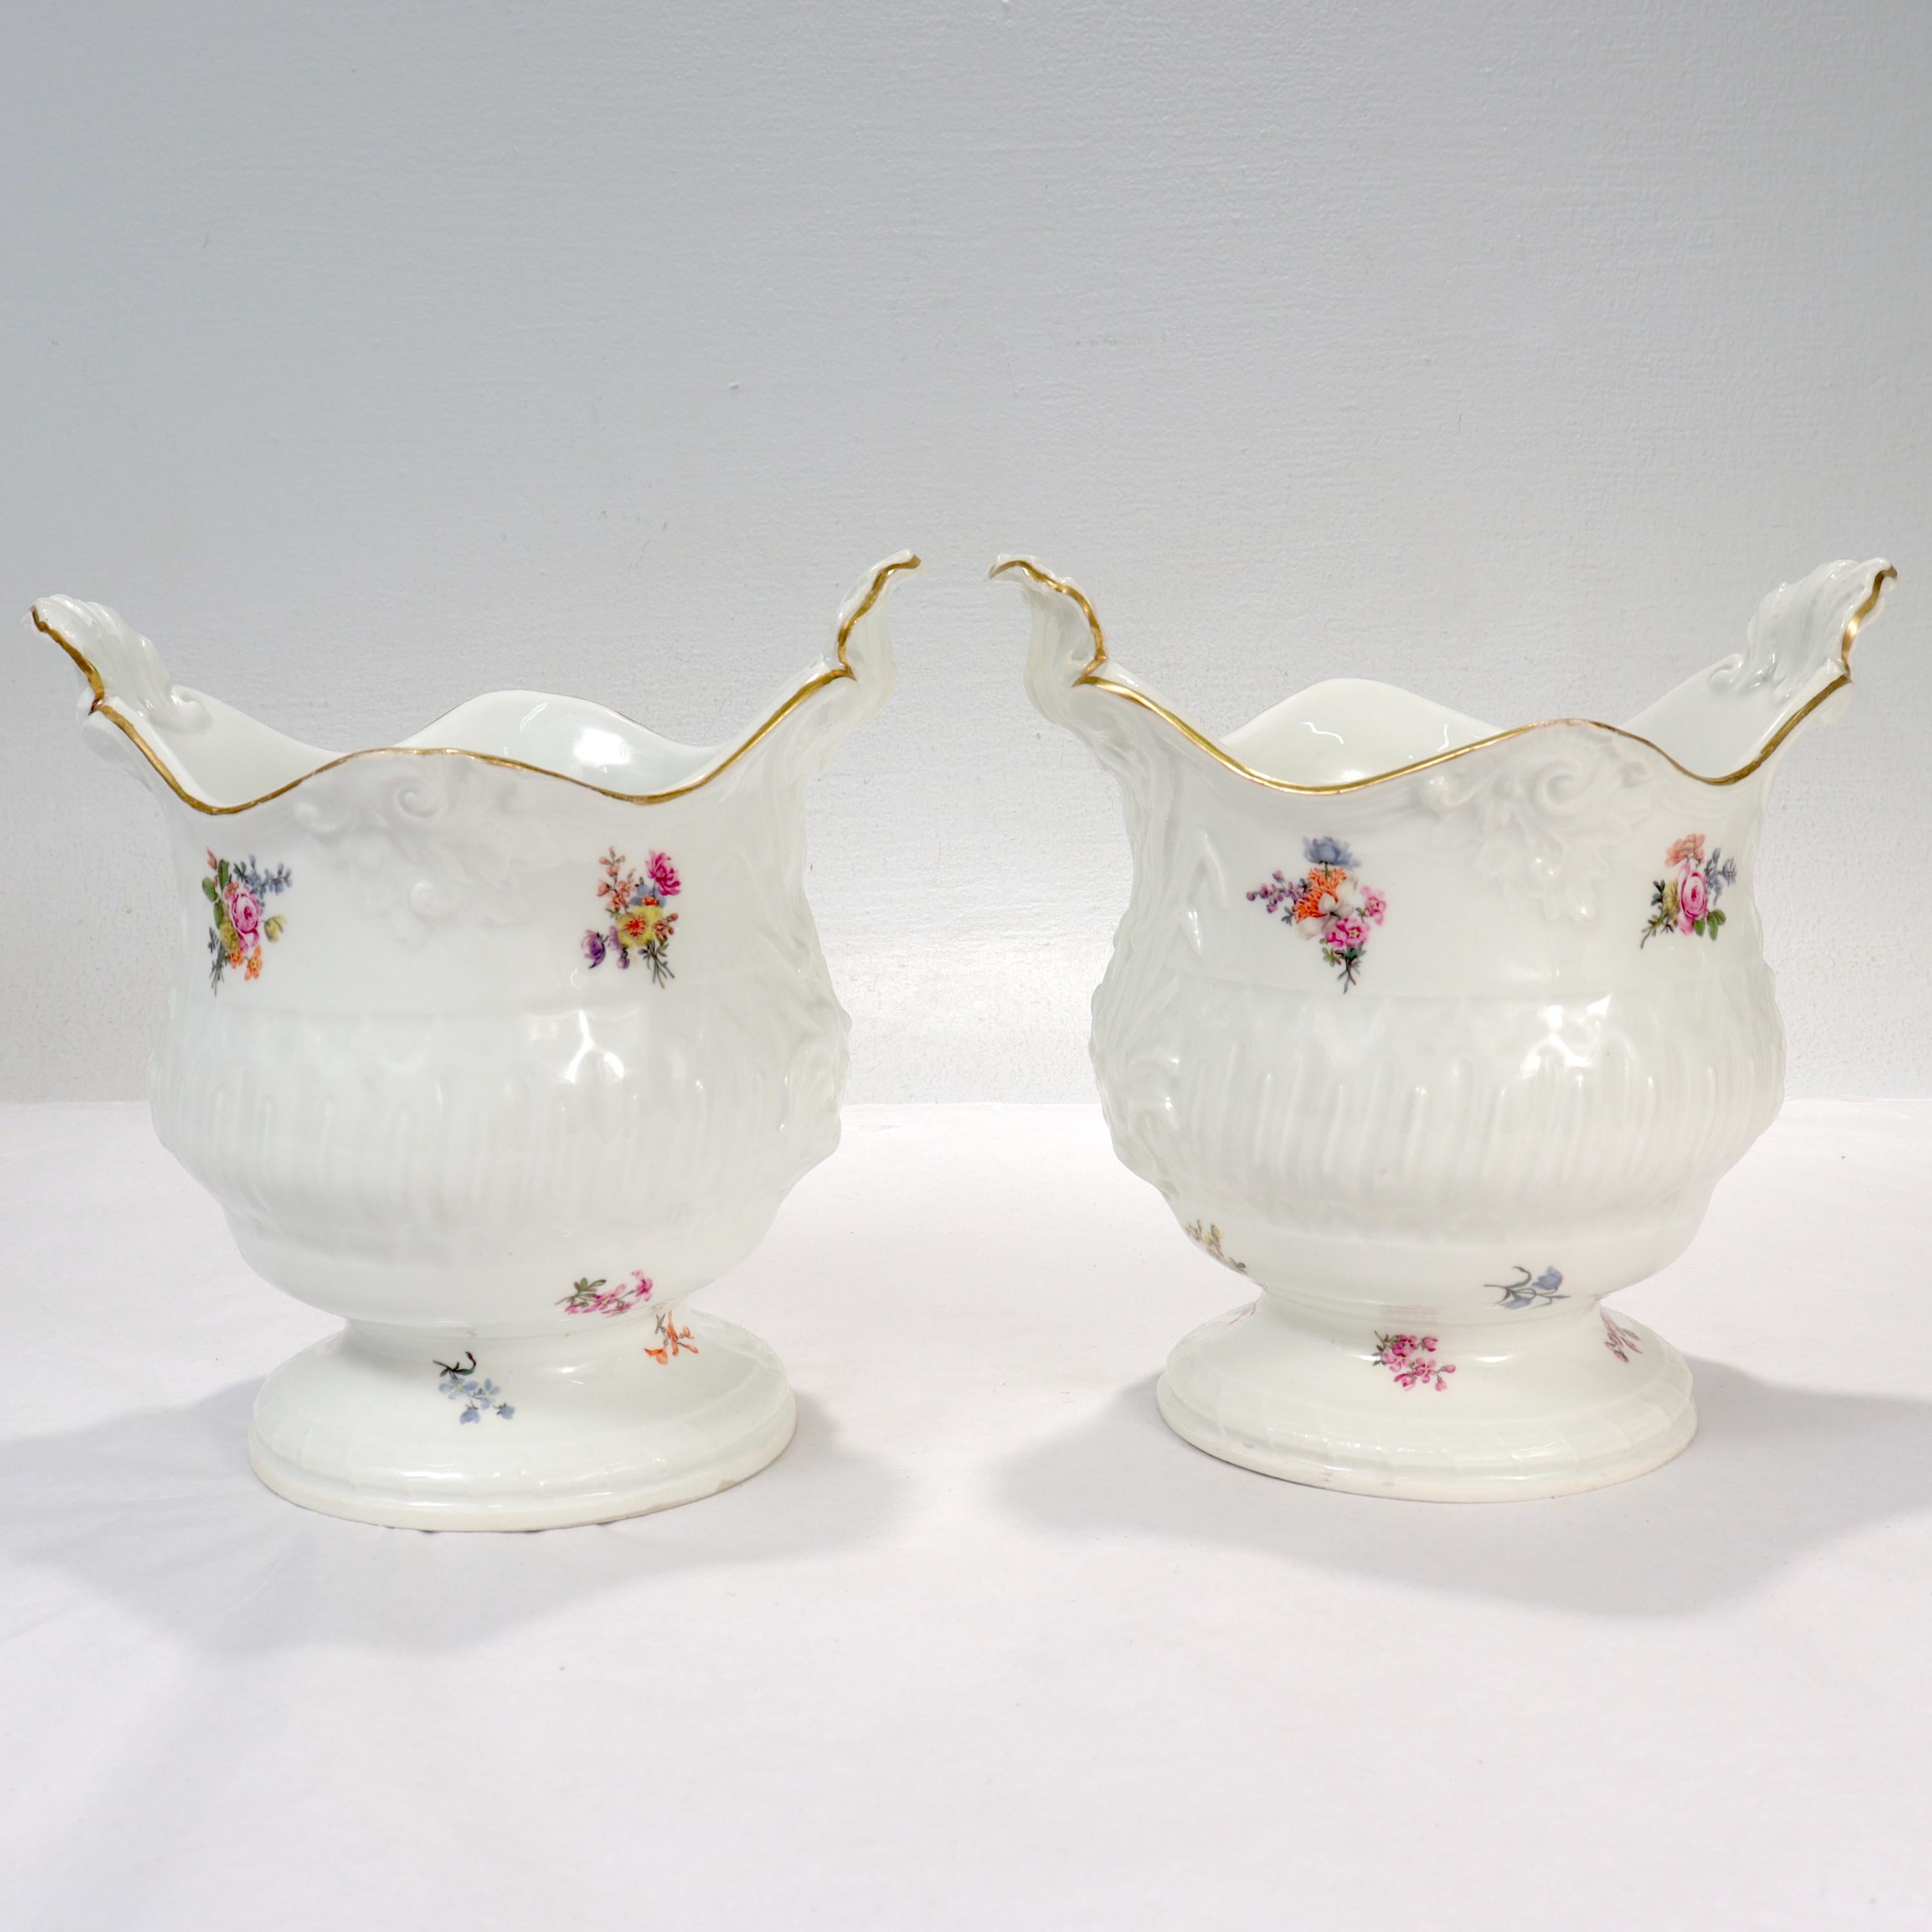 Baroque Pair of Antique 18th / 19th Century Meissen Porcelain Cachepots or Flower Pots For Sale